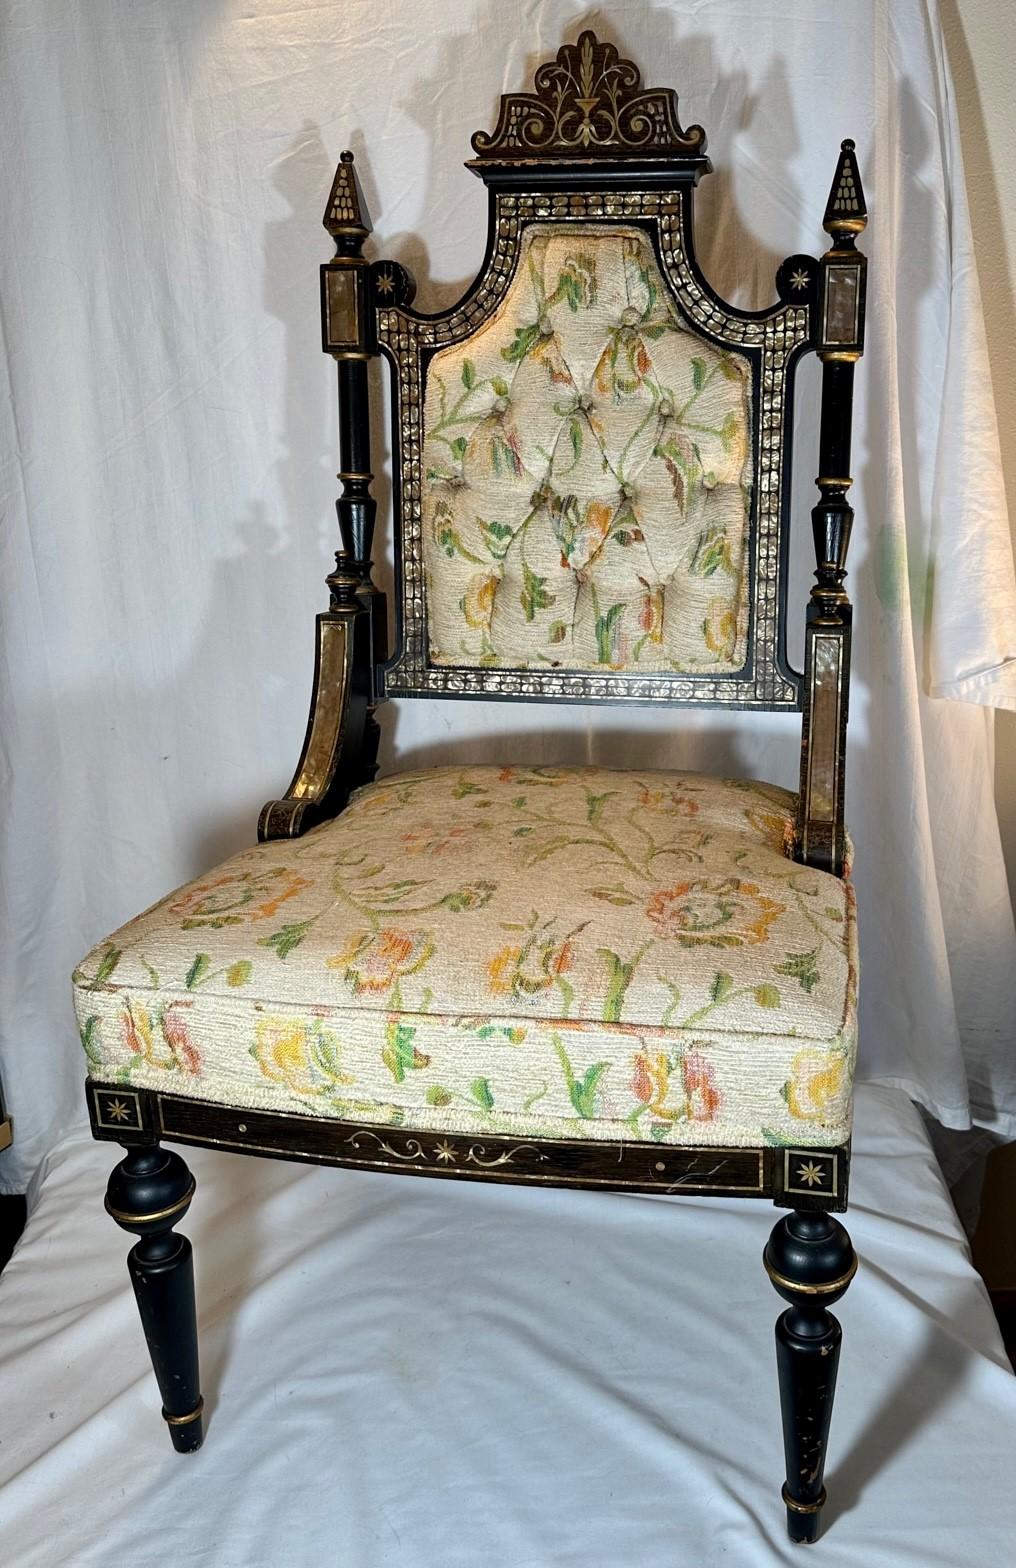 Chaise mi-victorienne ébonisée avec incrustation de nacre.

Rare chaise d'appoint ancienne en nacre incrustée. Le bois ébonisé et décoré d'or est sculpté et tourné avec de fins détails. La chaise mid victorienne est probablement originaire